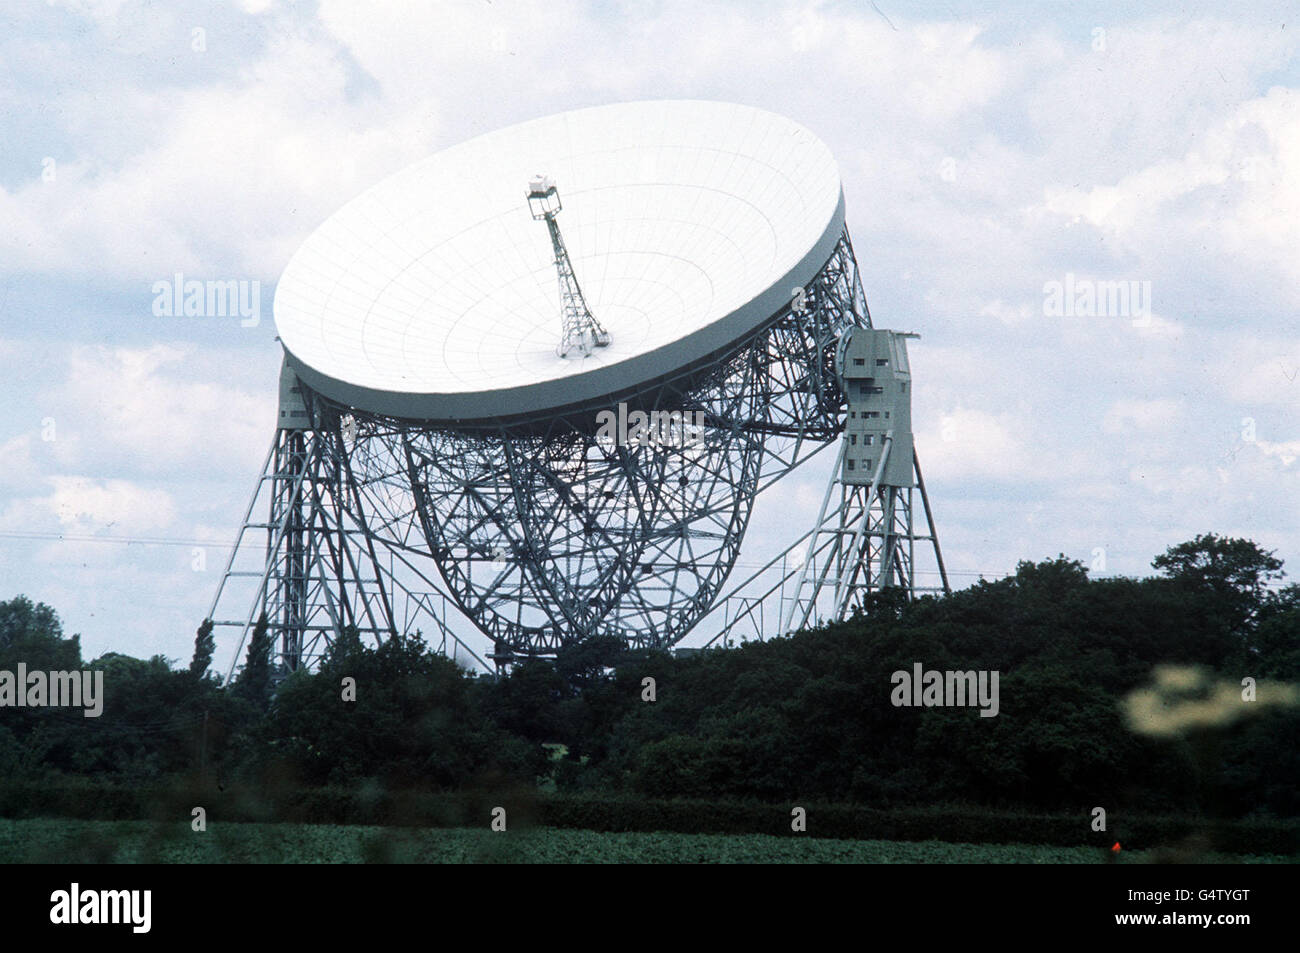 File della biblioteca datato giugno 1977 del Telescopio radio Jodrell Bank a Cheshire. Gli astronomi hanno utilizzato un radiotelescopio delle dimensioni della Terra per scrutare nel cuore infurante di una galassia starbst instabile, è stato divulgato mercoledì 8 dicembre 1999. Le osservazioni, tratte da uno dei più grandi esperimenti di radioastronomia di tutti i tempi, furono condotte da astronomi britannici alla Jodrell Bank e all'Università di Sheffield. Utilizzando una collezione di 20 radiotelescopi che lavorano insieme intorno alla Terra, il team ha prodotto immagini di dettaglio senza precedenti di una galassia a 10 milioni di anni luce chiamata M82. Foto PA. Foto Stock